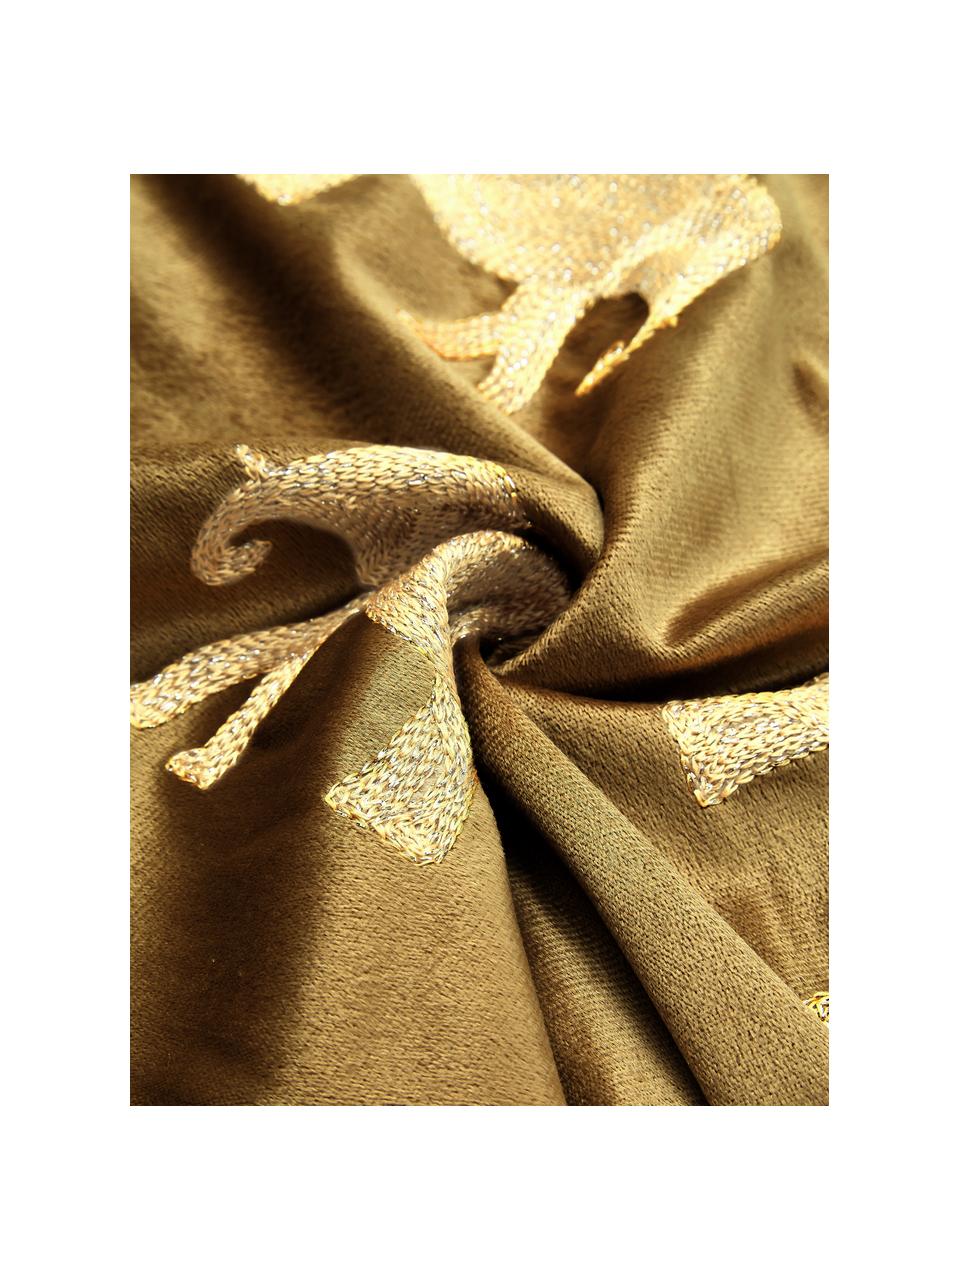 Poduszka z aksamitu z haftem i wypełnieniem Elephant, 100% aksamit (poliester), Brązowy, odcienie złotego, S 45 x D 45 cm